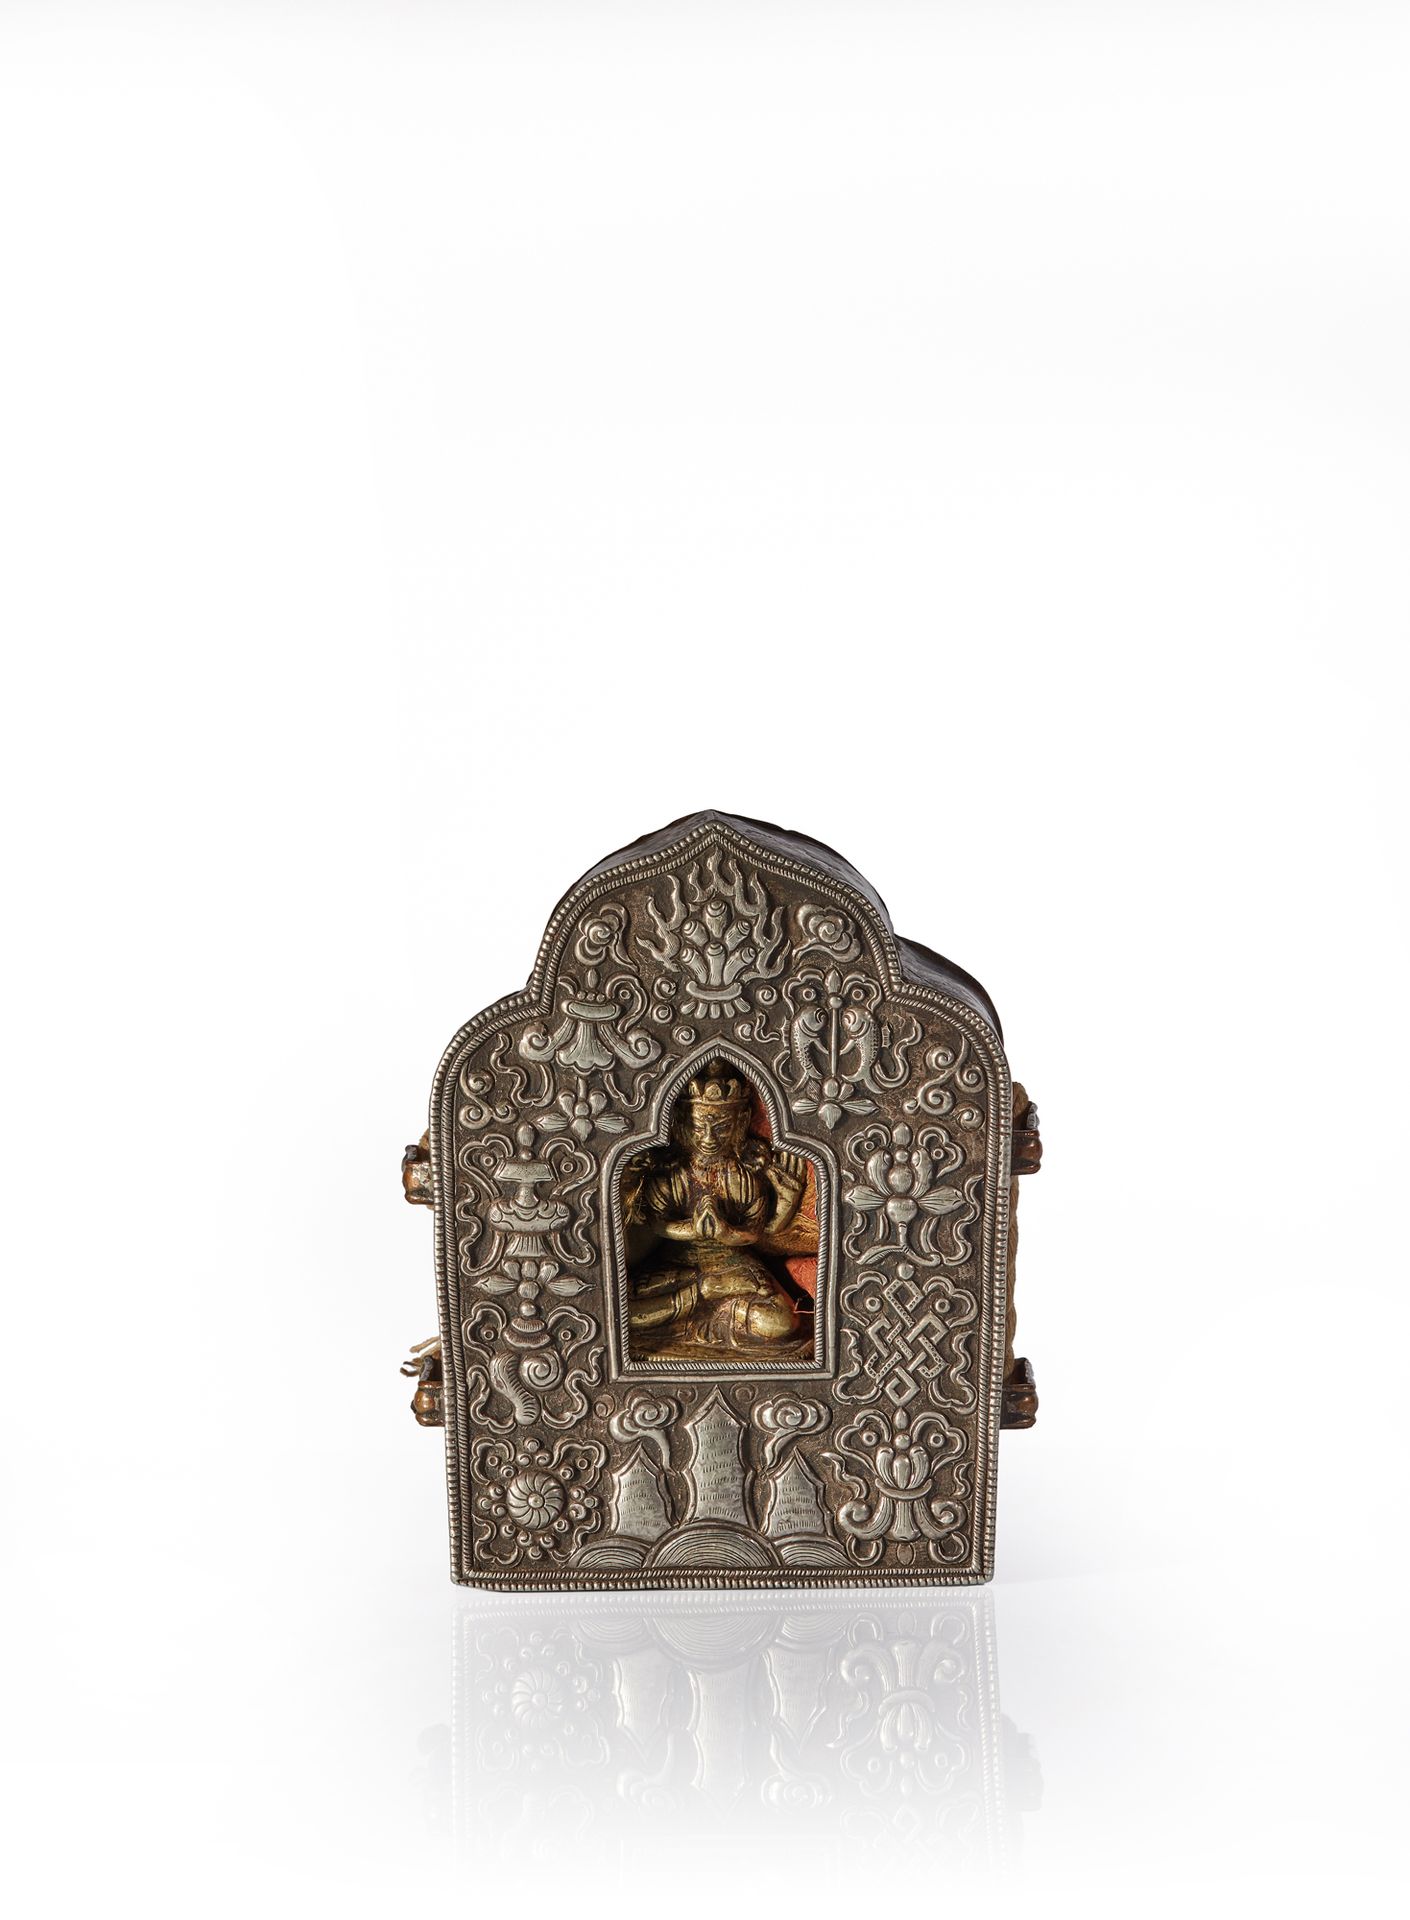 TIBET - XIXe siècle Ga'u便携式祭坛，银质正面刻有八个佛教符号（ashtamangala），围着一尊萨达萨里四肢着地的铜质雕像。
重量：5&hellip;